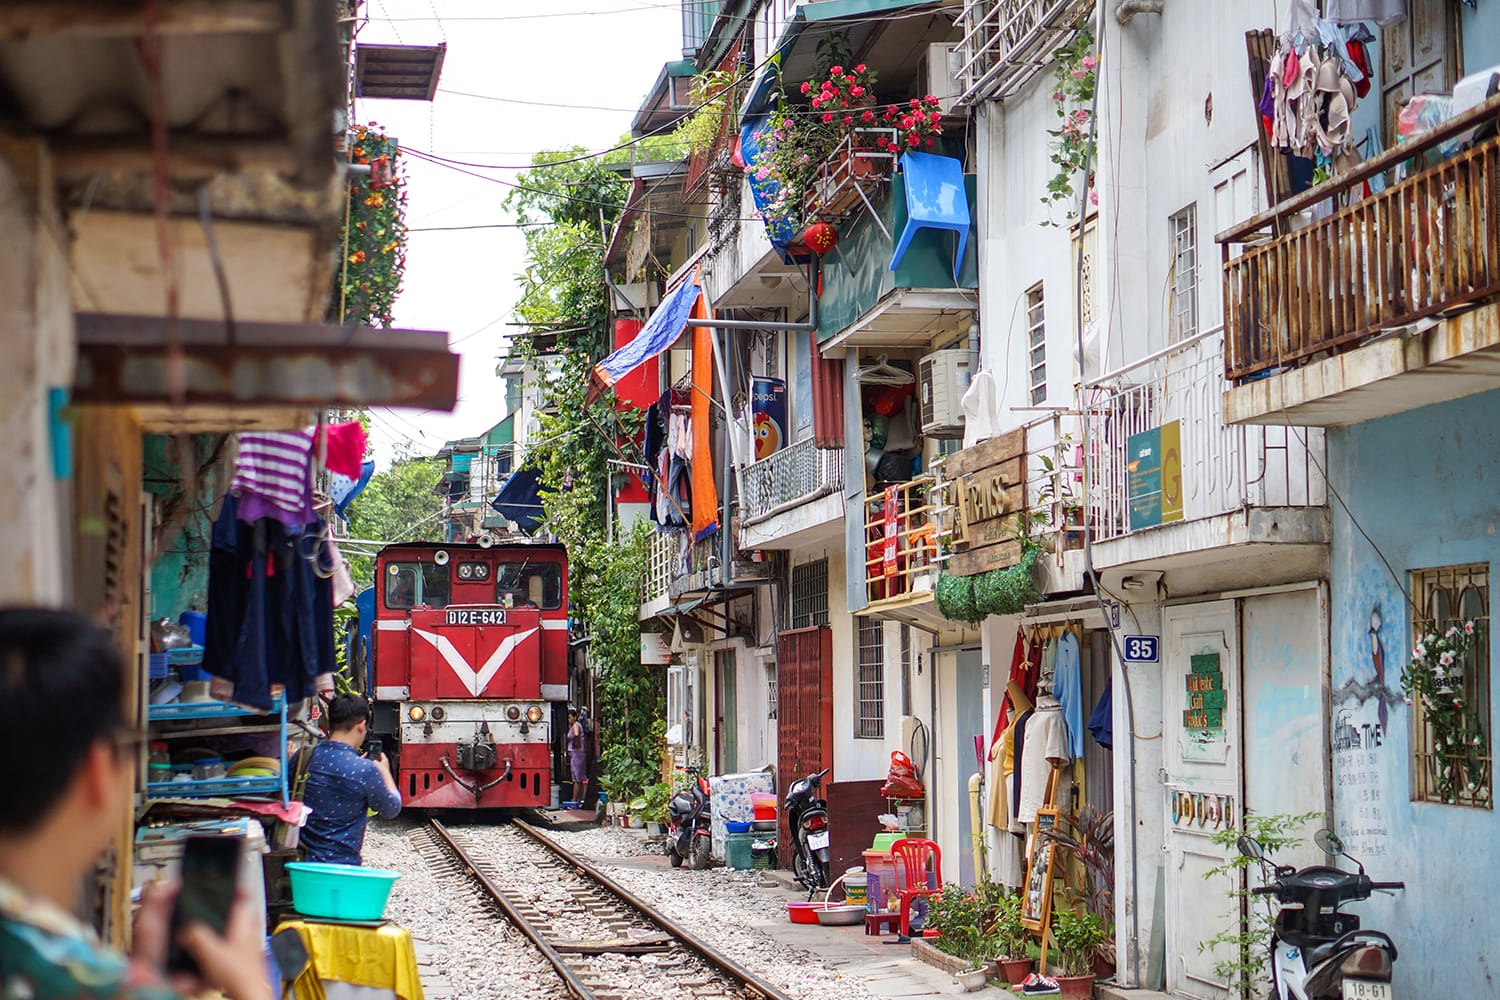 A train running through ancient town in Hanoi.